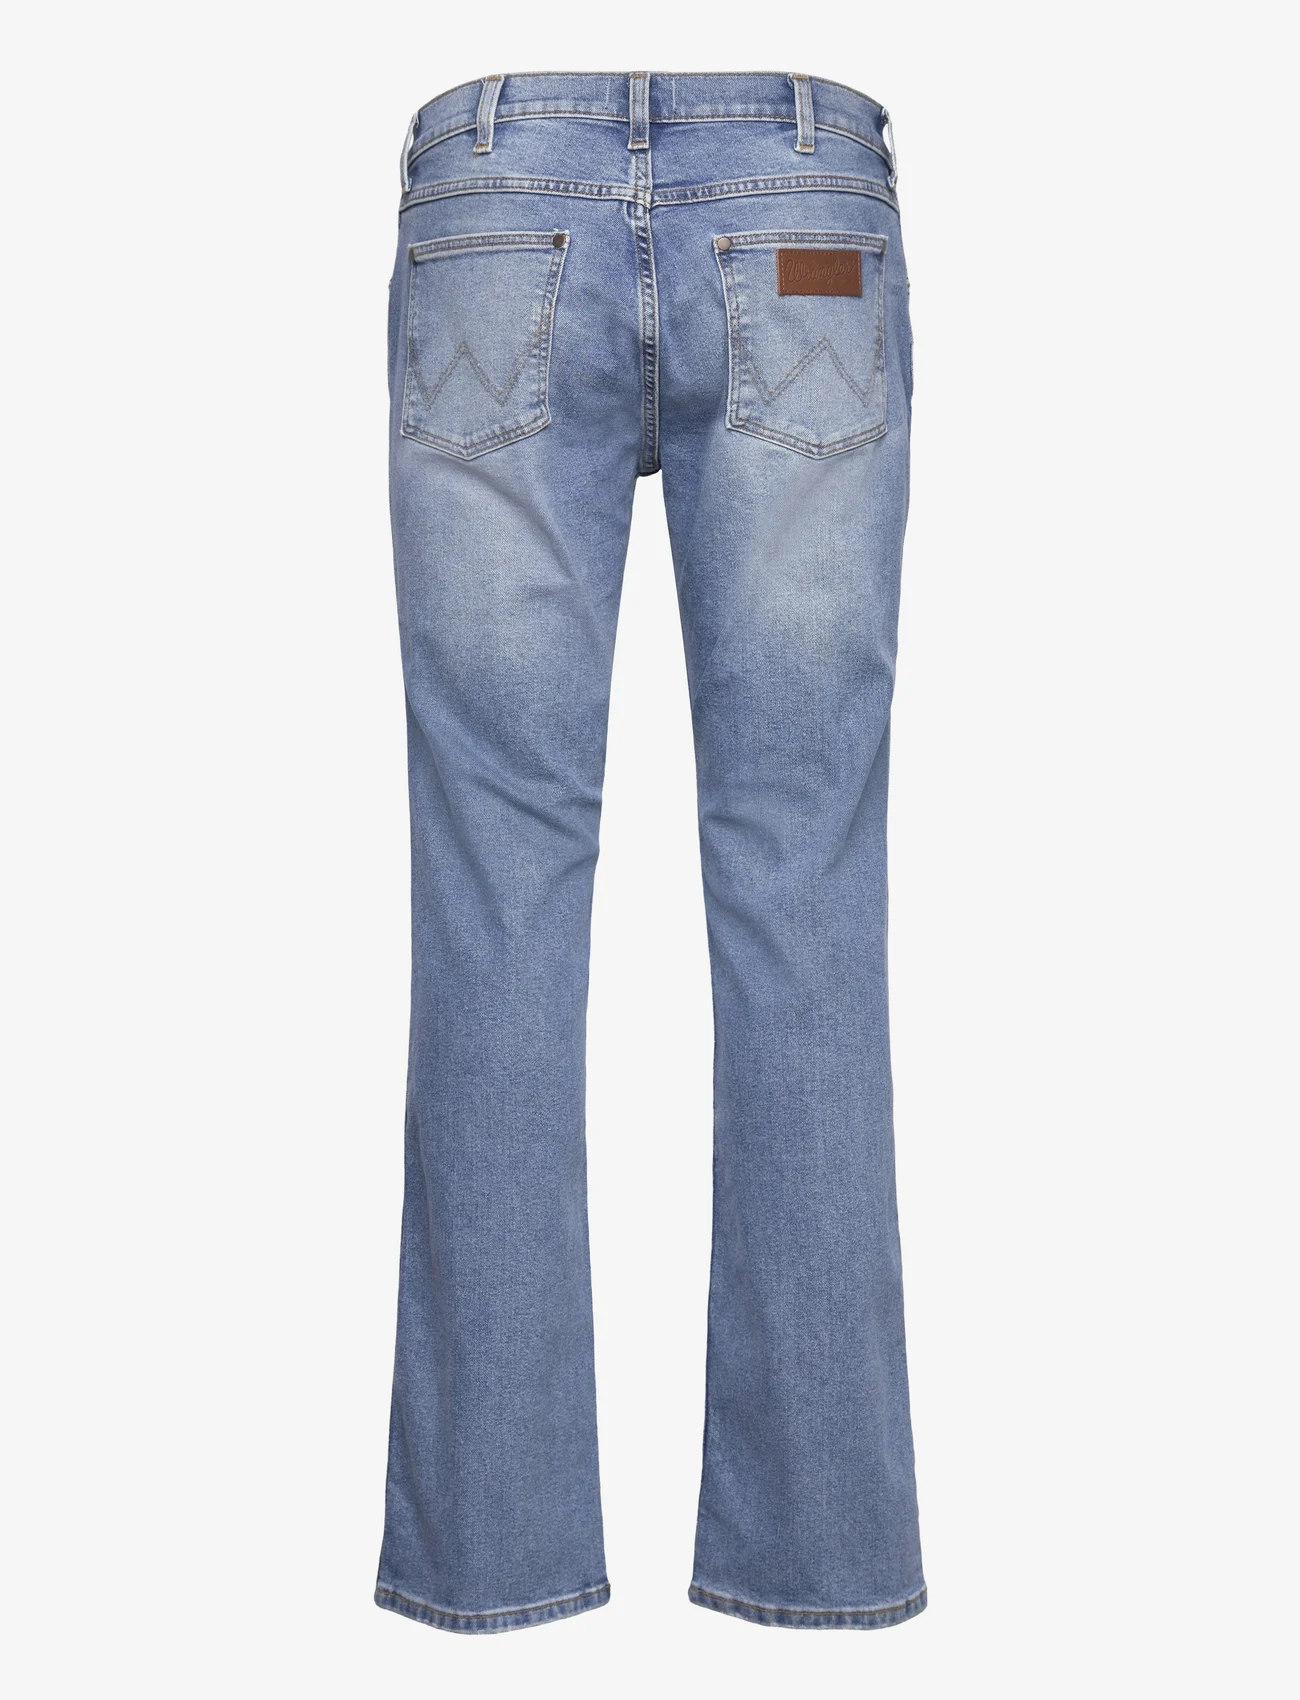 Wrangler - HORIZON - regular jeans - blue springs - 1